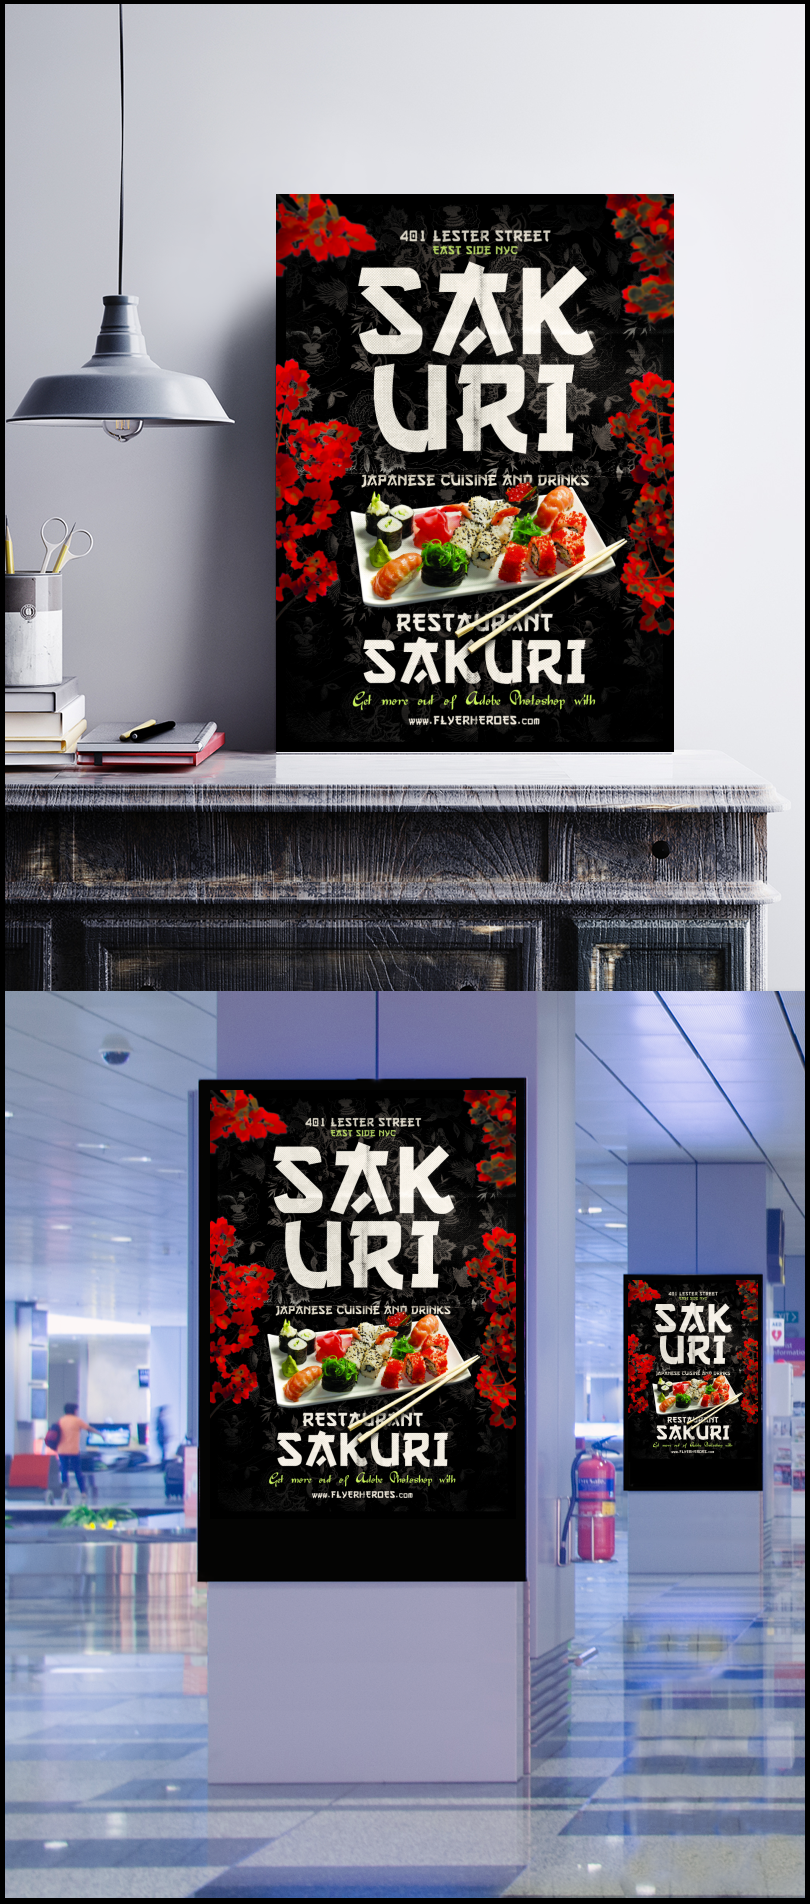 寿司美食海报